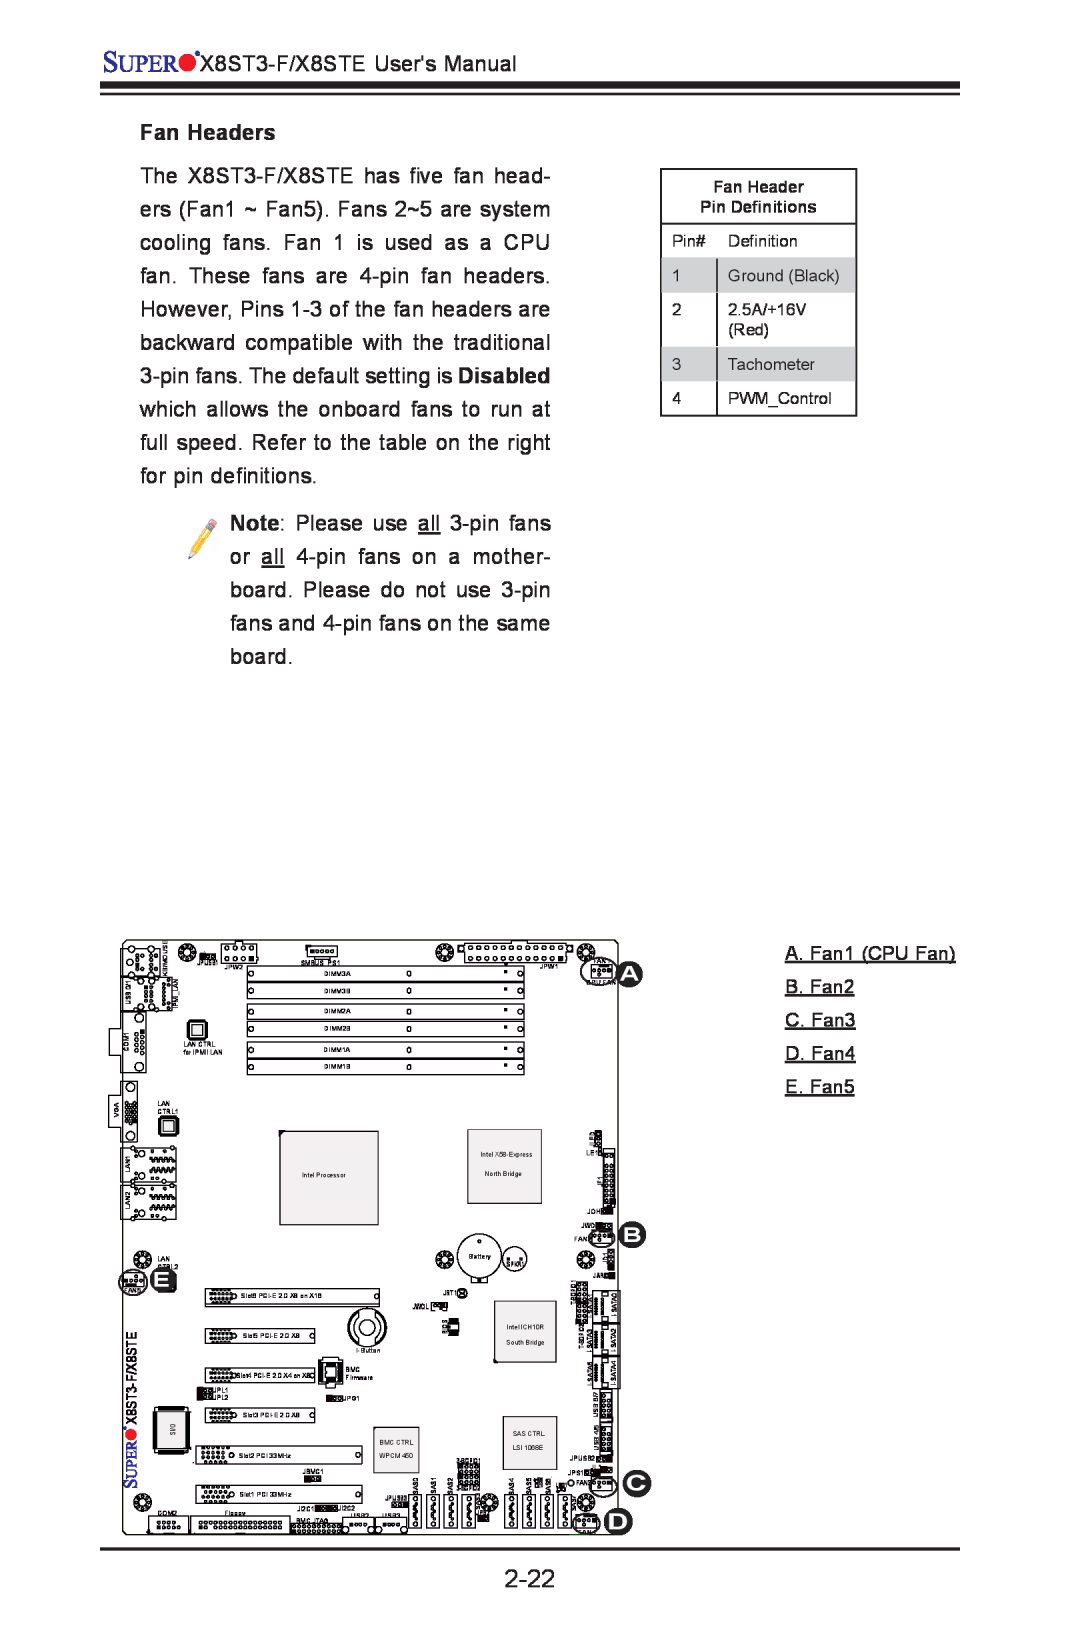 SUPER MICRO Computer X8ST3-F, X8STE user manual 2-22, Fan Headers, E. Fan5 